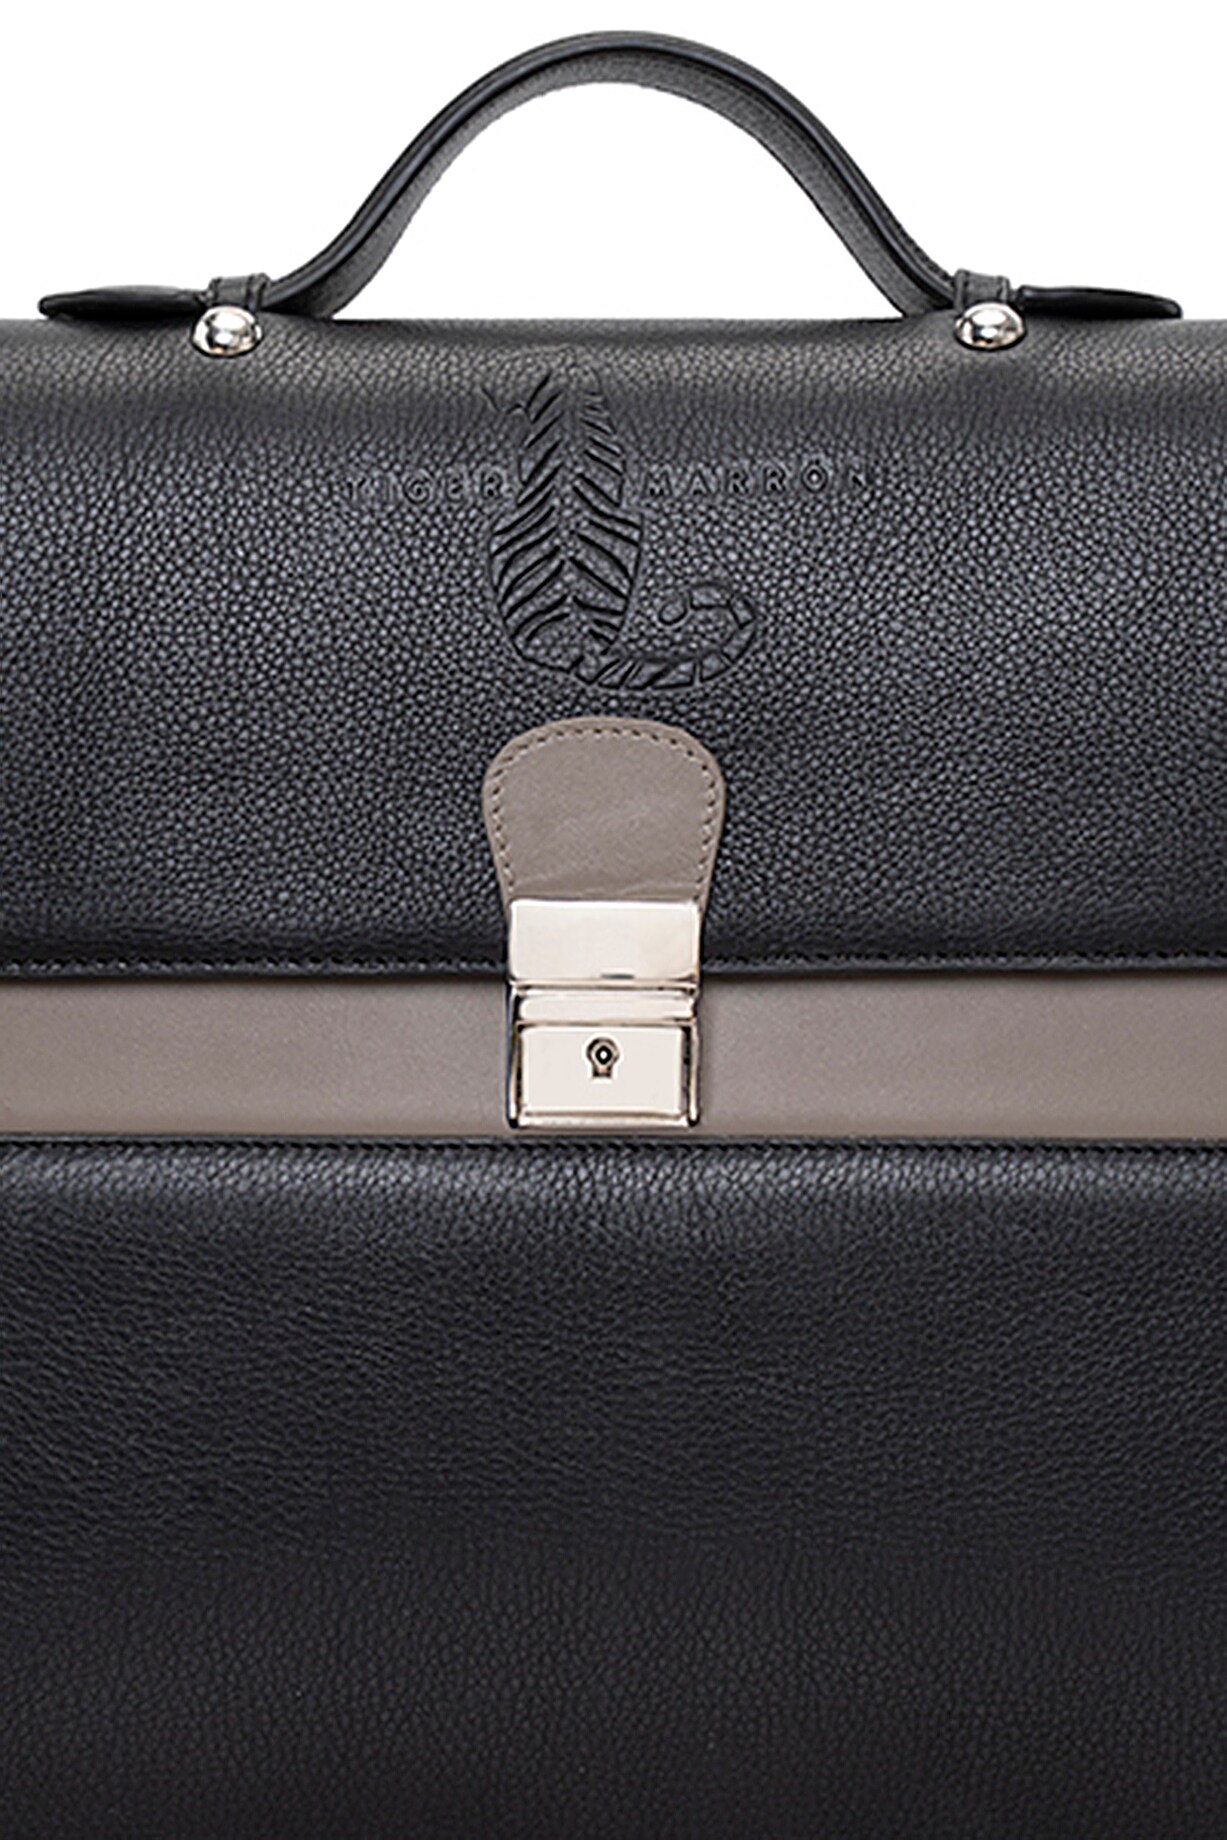 Grey & Black Handcrafted Briefcase by Tiger Marron